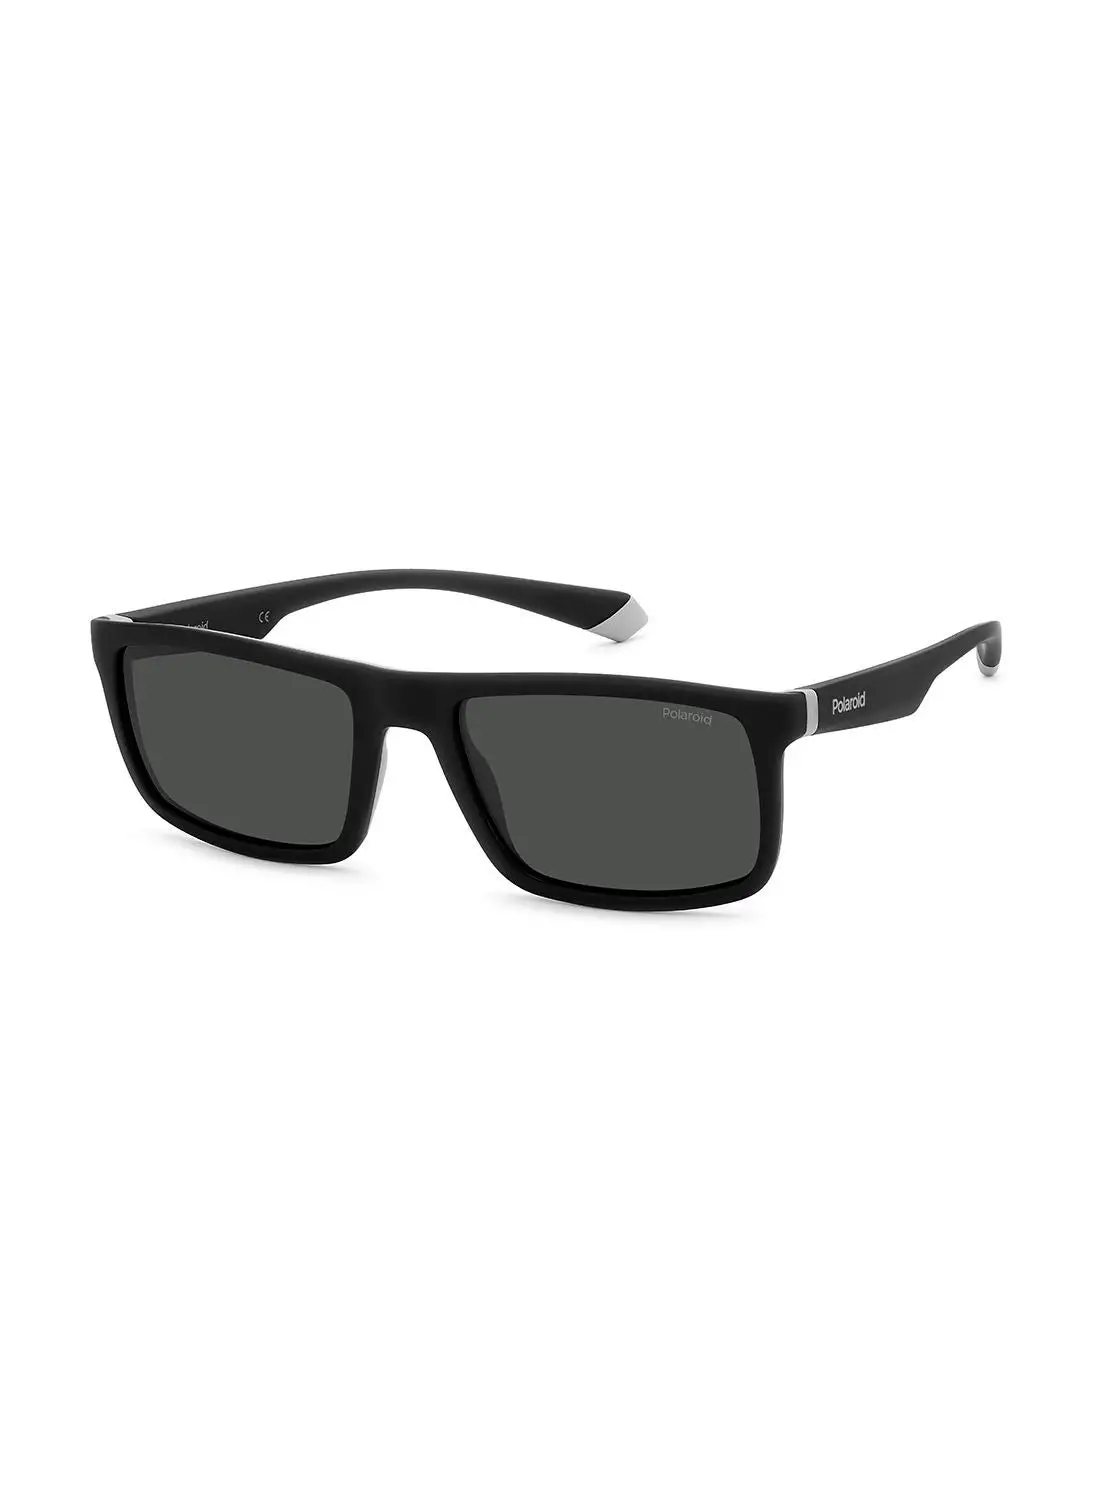 Polaroid Men's UV Protection Rectangular Sunglasses - Pld 2134/S Blackgrey 56 - Lens Size: 56 Mm